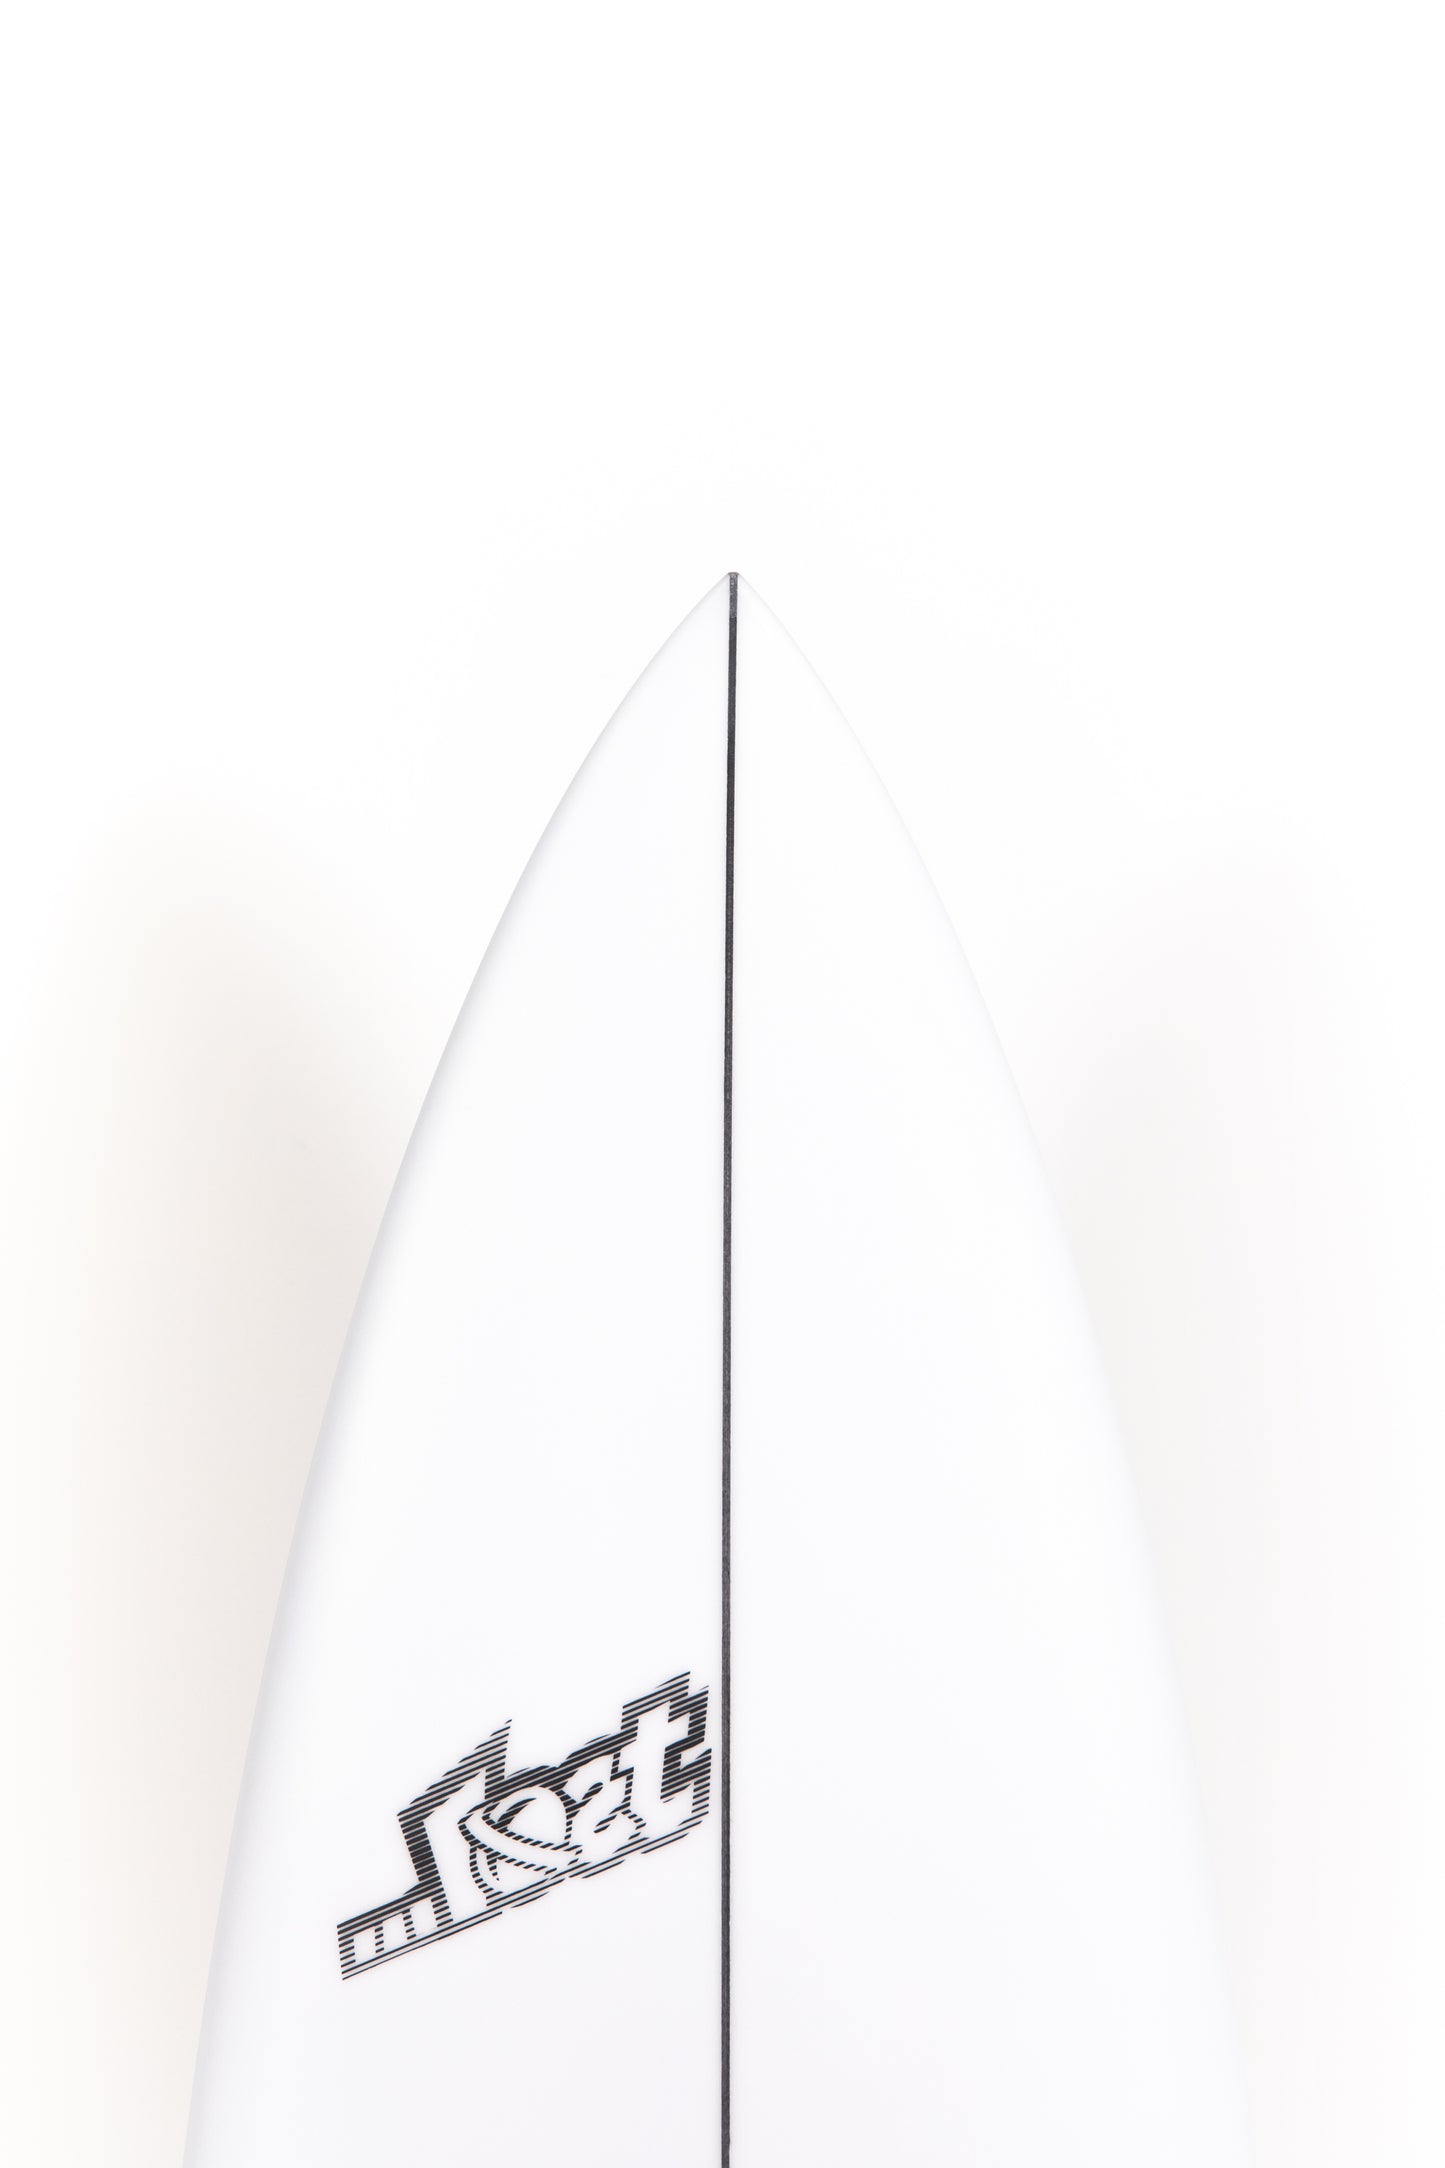 
                  
                    Pukas-Surf-Shop-Lost-Surfboards-3-0-stub-driver_Matt-Biolos-6_0
                  
                